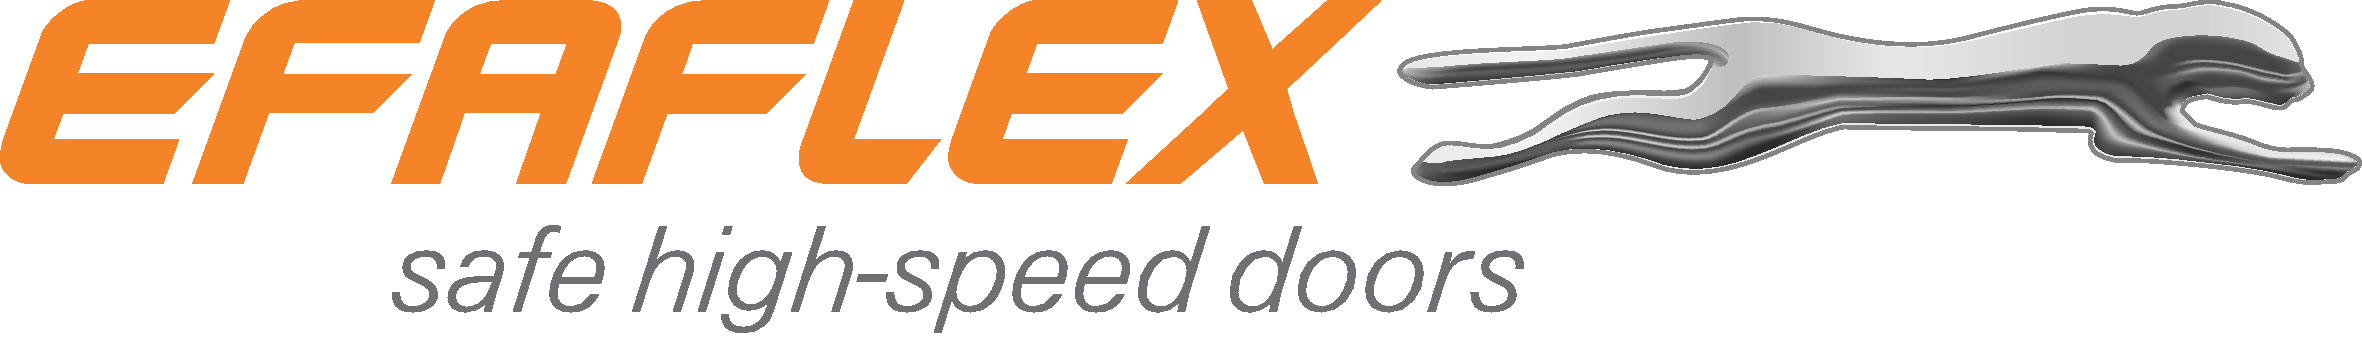 efaflex Logo